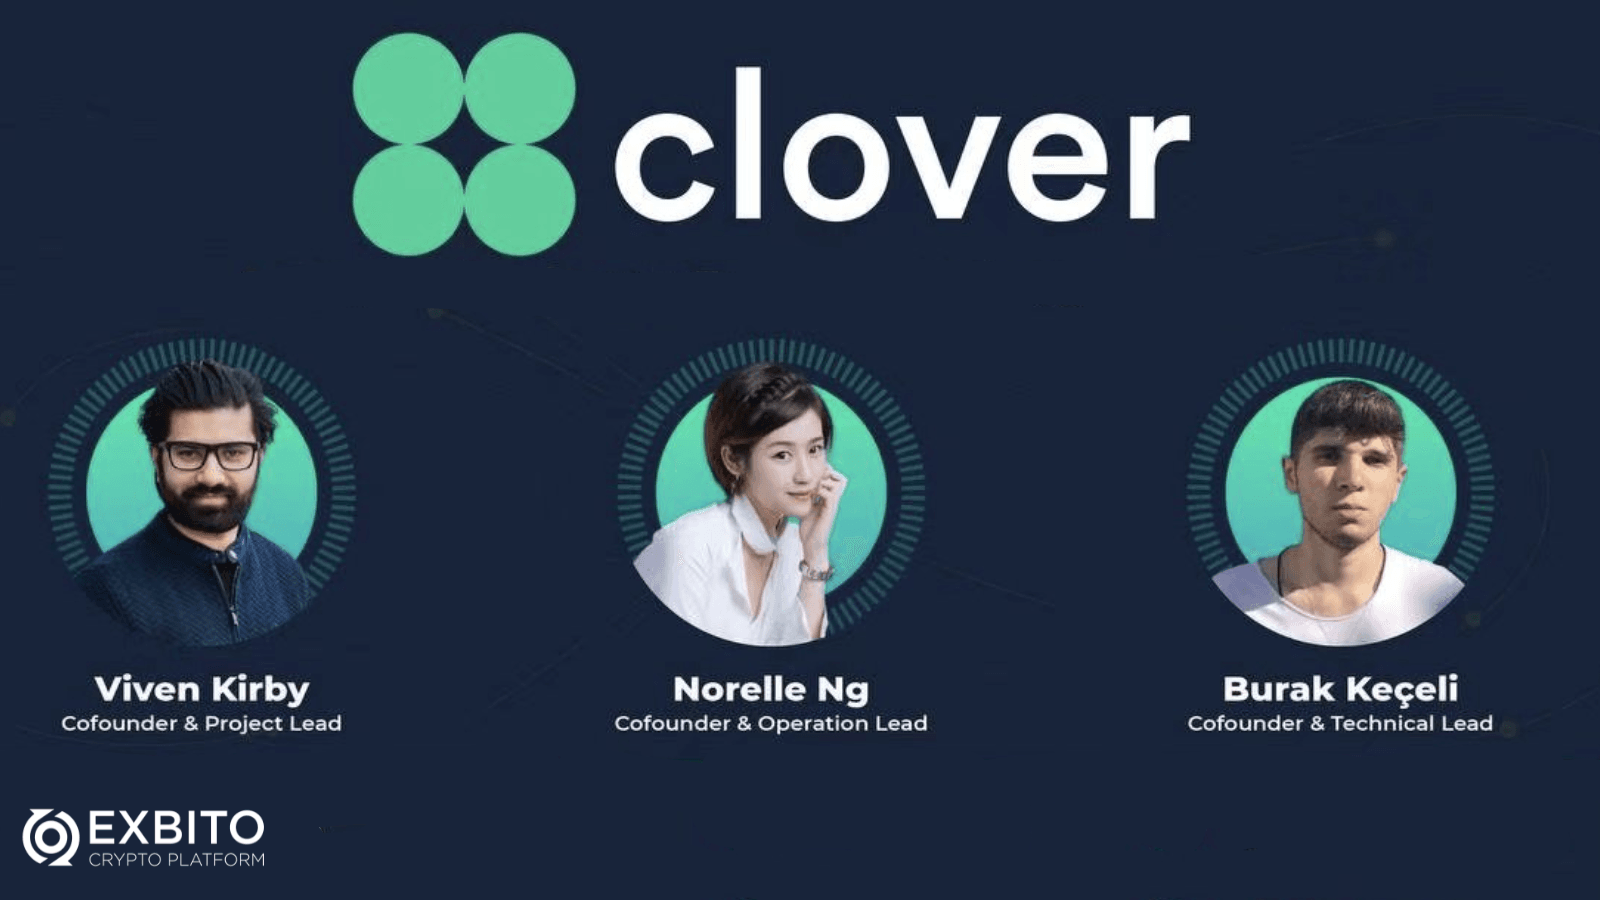  بنیان‌گذاران کلاور فایننس (Clover Finance) چه افرادی هستند؟